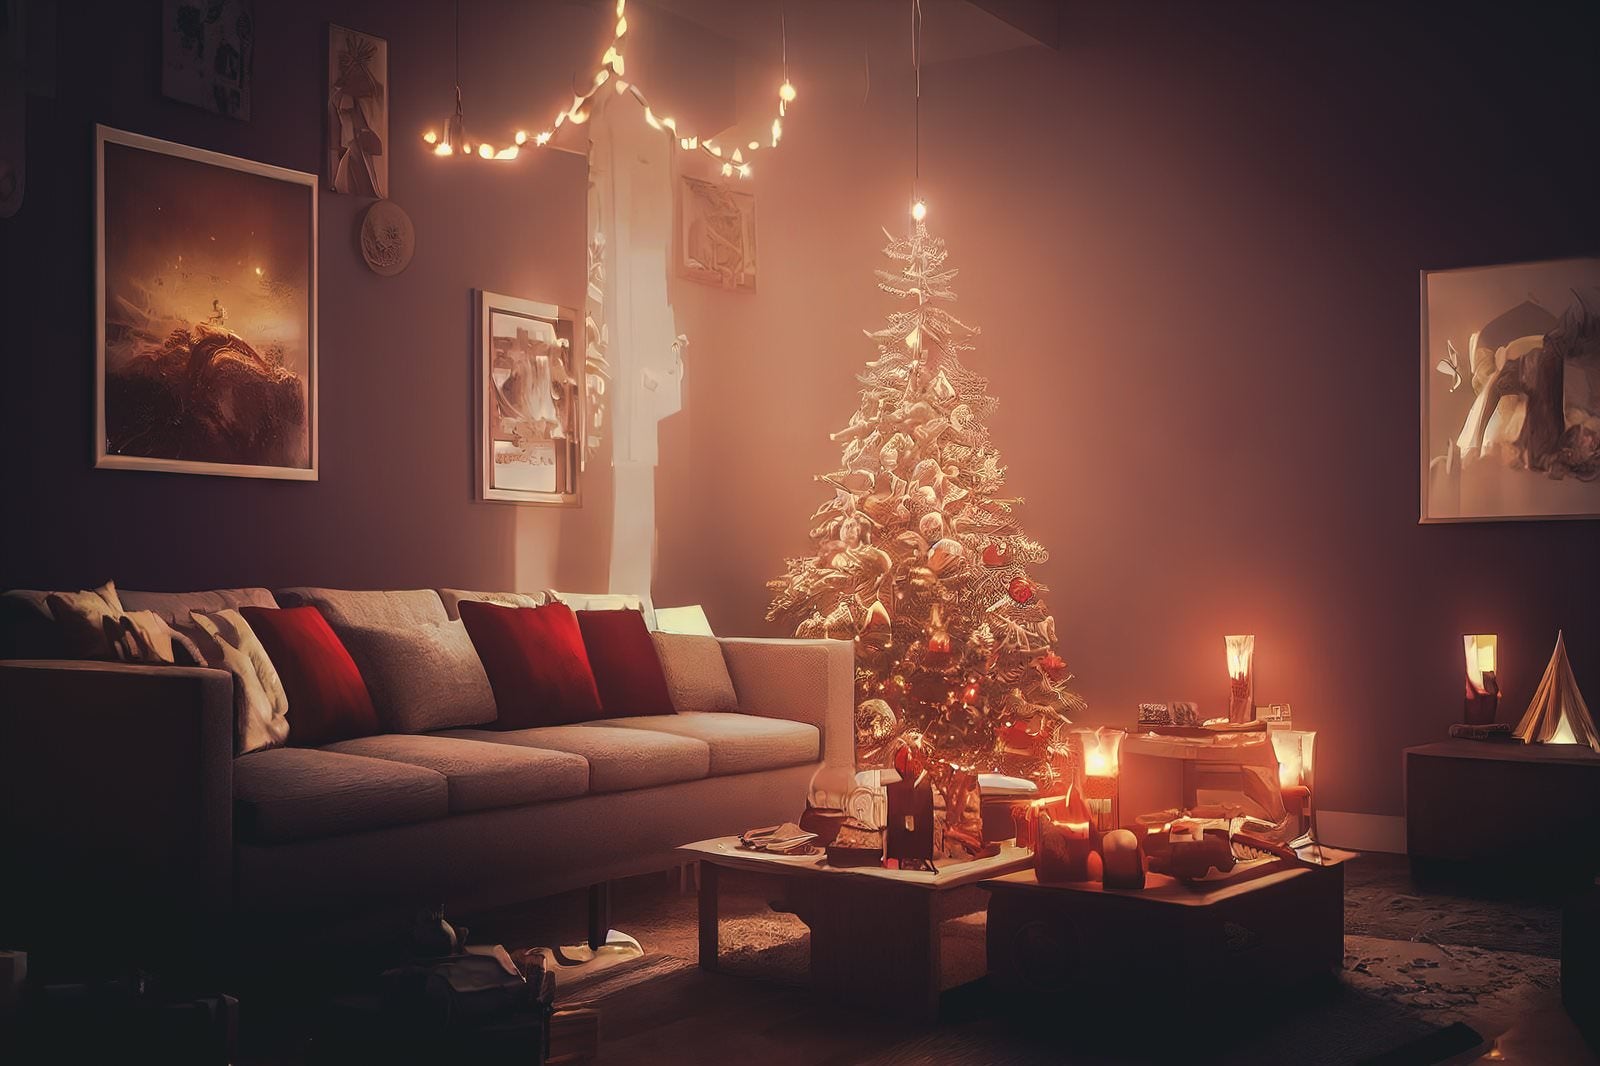 「クリスマスツリーが飾られた部屋」の写真